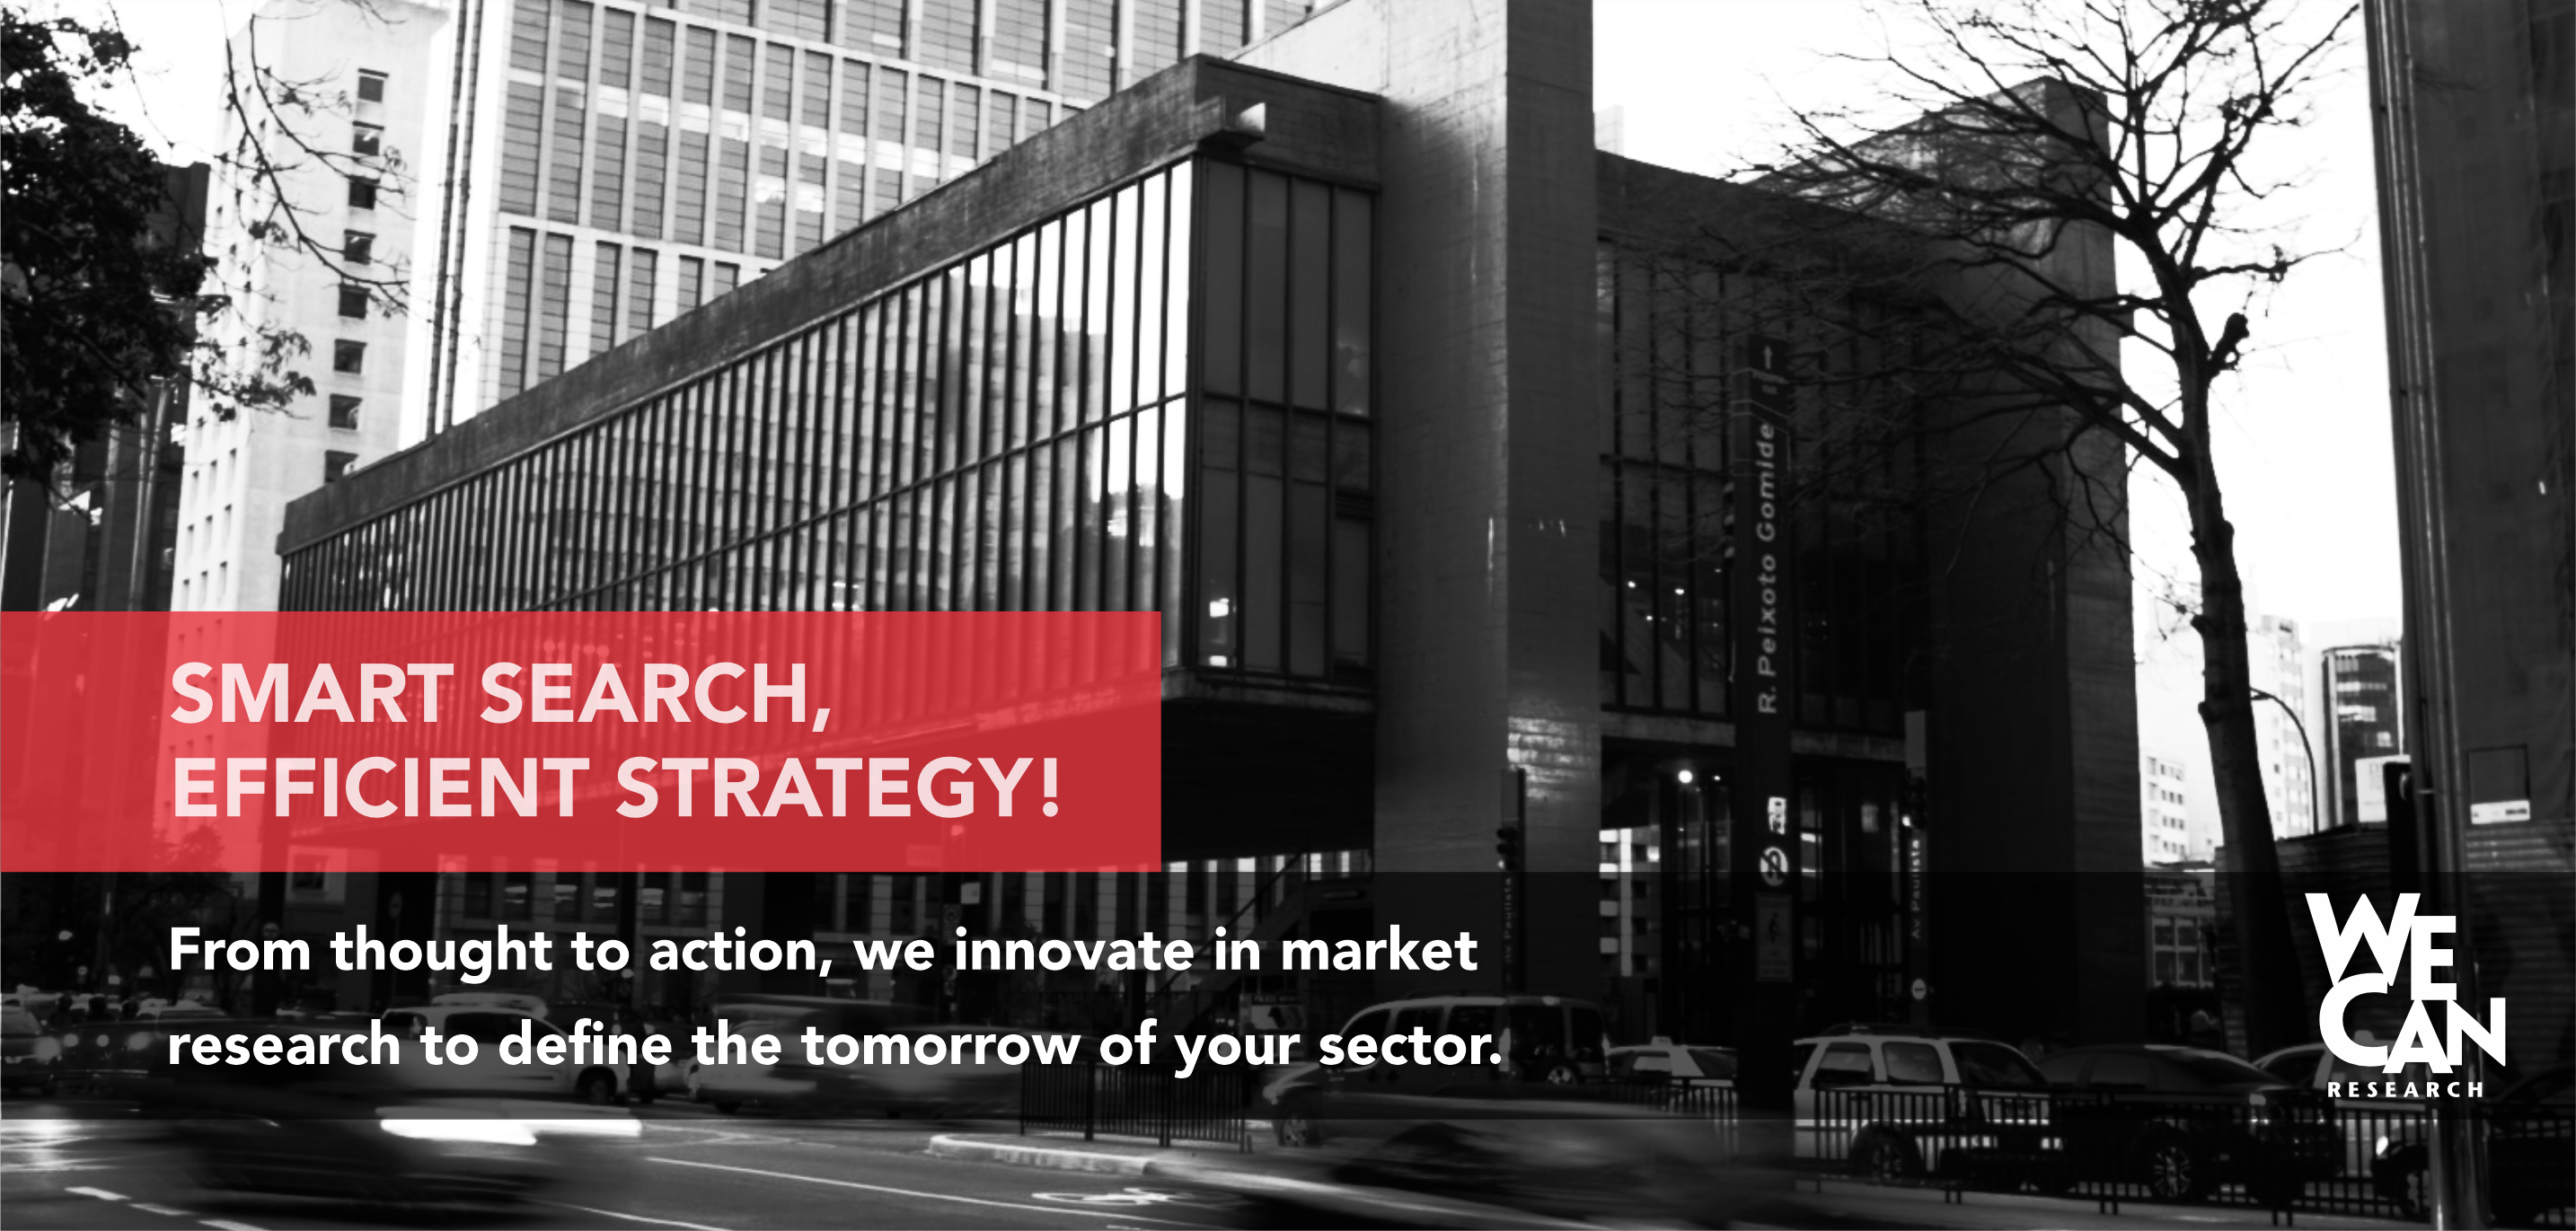 PESQUISA INTELIGENTE, ESTRATÉGIA EFICIENTE! Do pensamento à ação, inovamos na pesquisa de mercado para definir o amanhâ do seu setor.